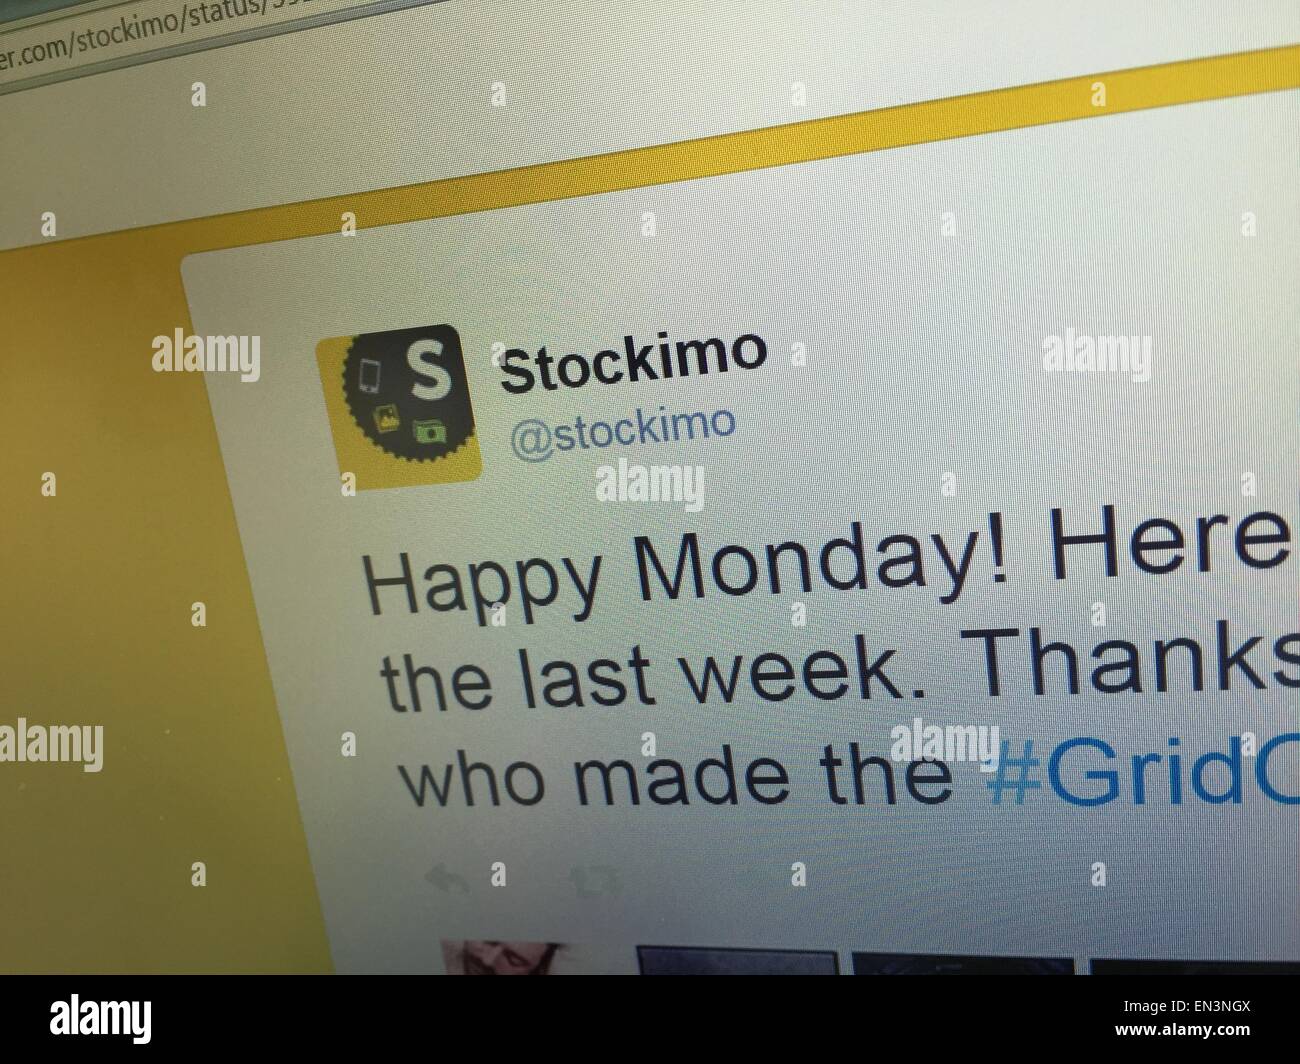 Stockimo by Alamy, website Stock Photo